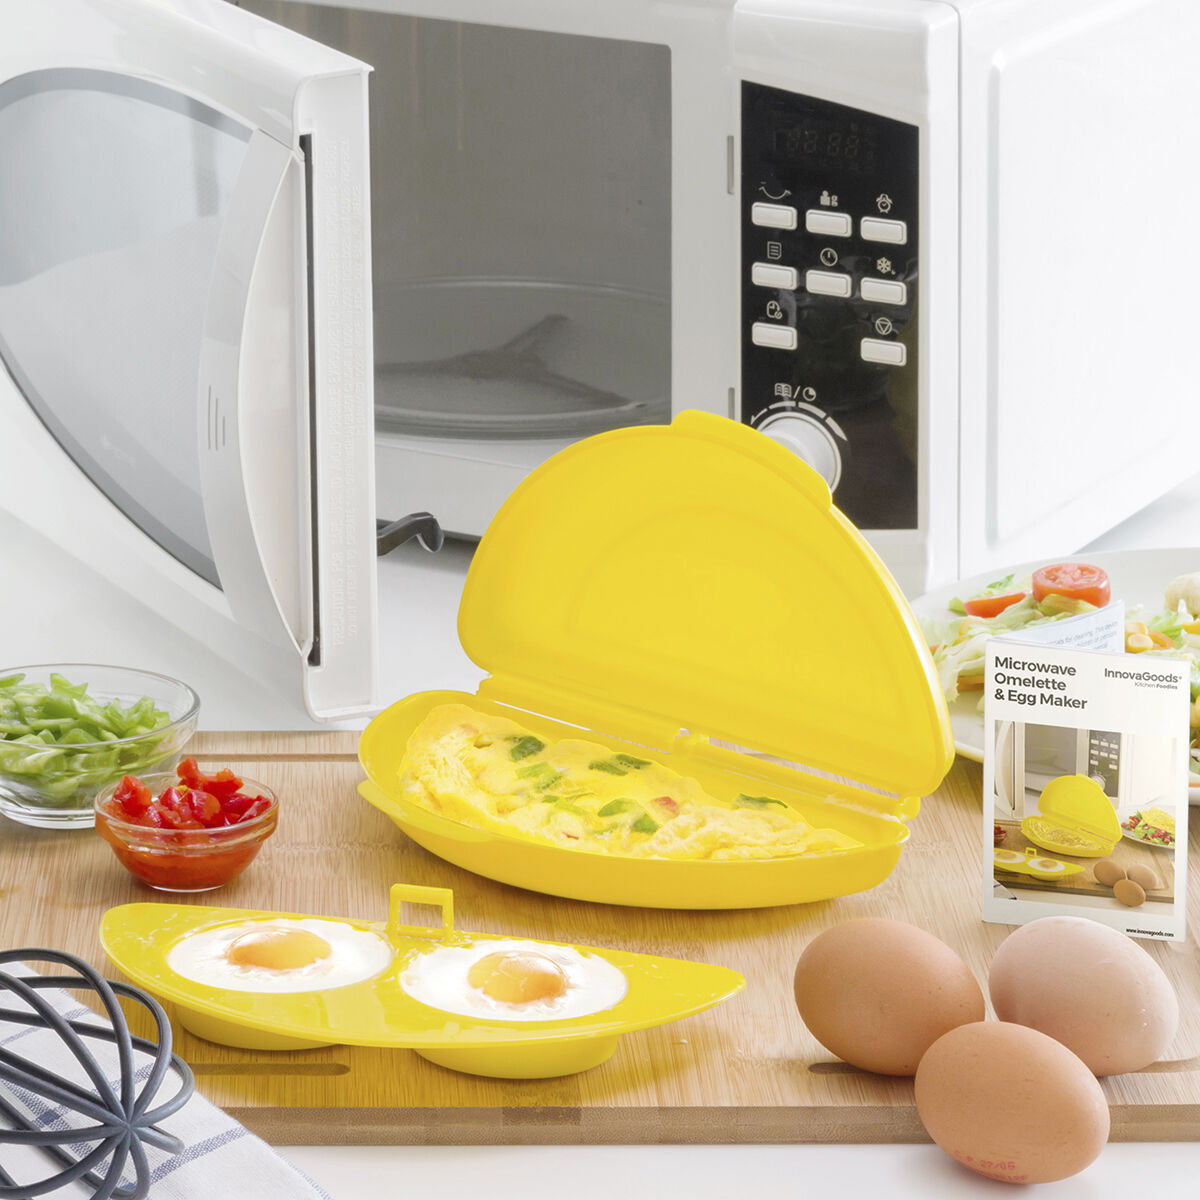 Omelettierer und Eierkocher